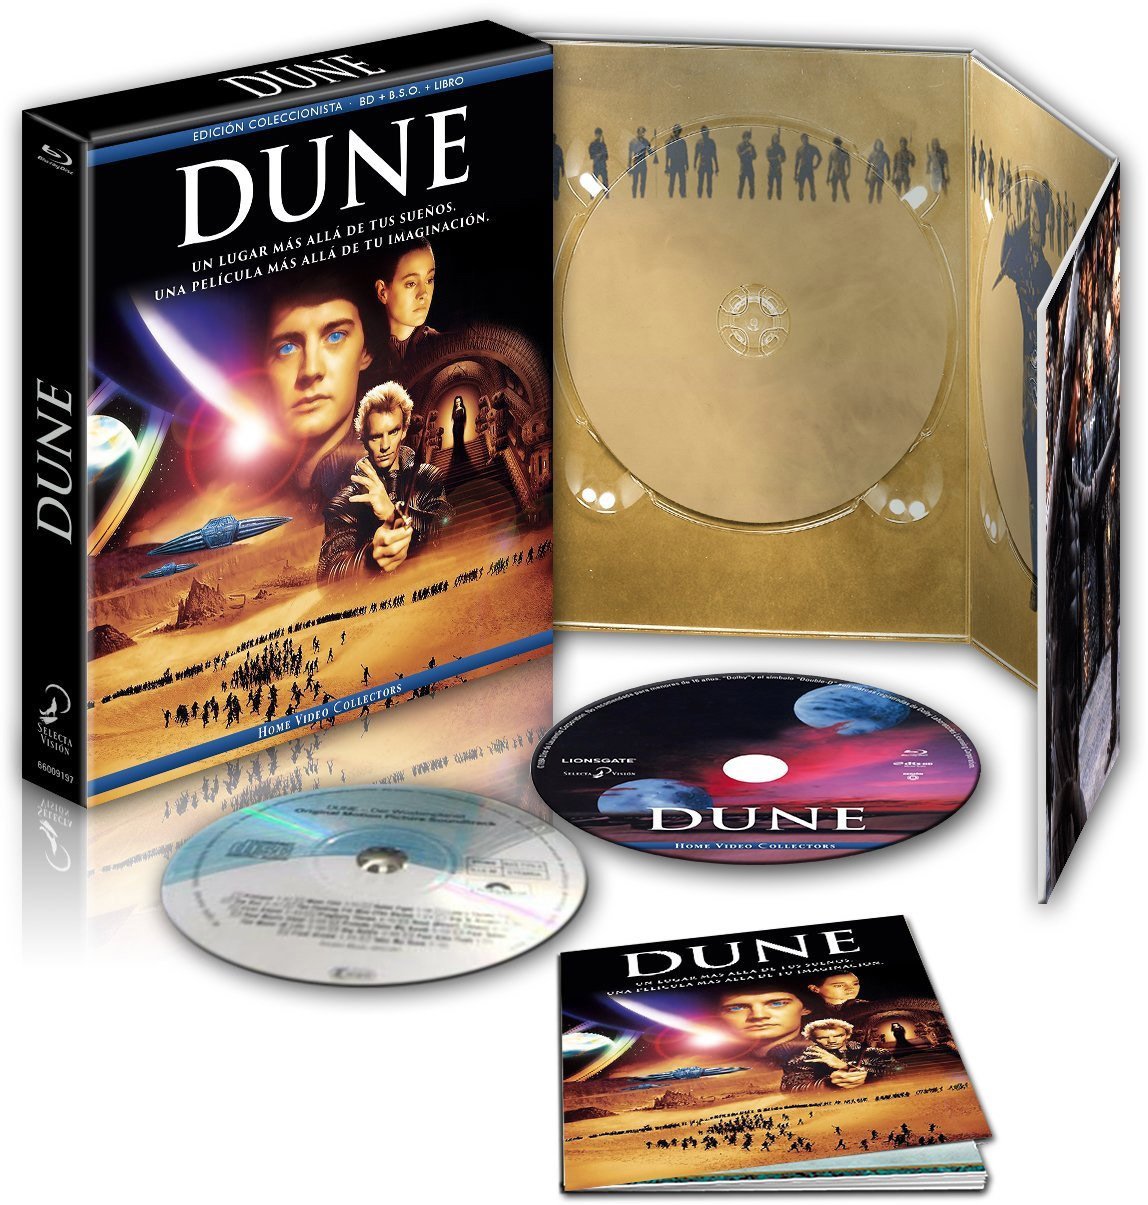 Dune en Blu-Ray, Edición coleccionista, por solo 14€